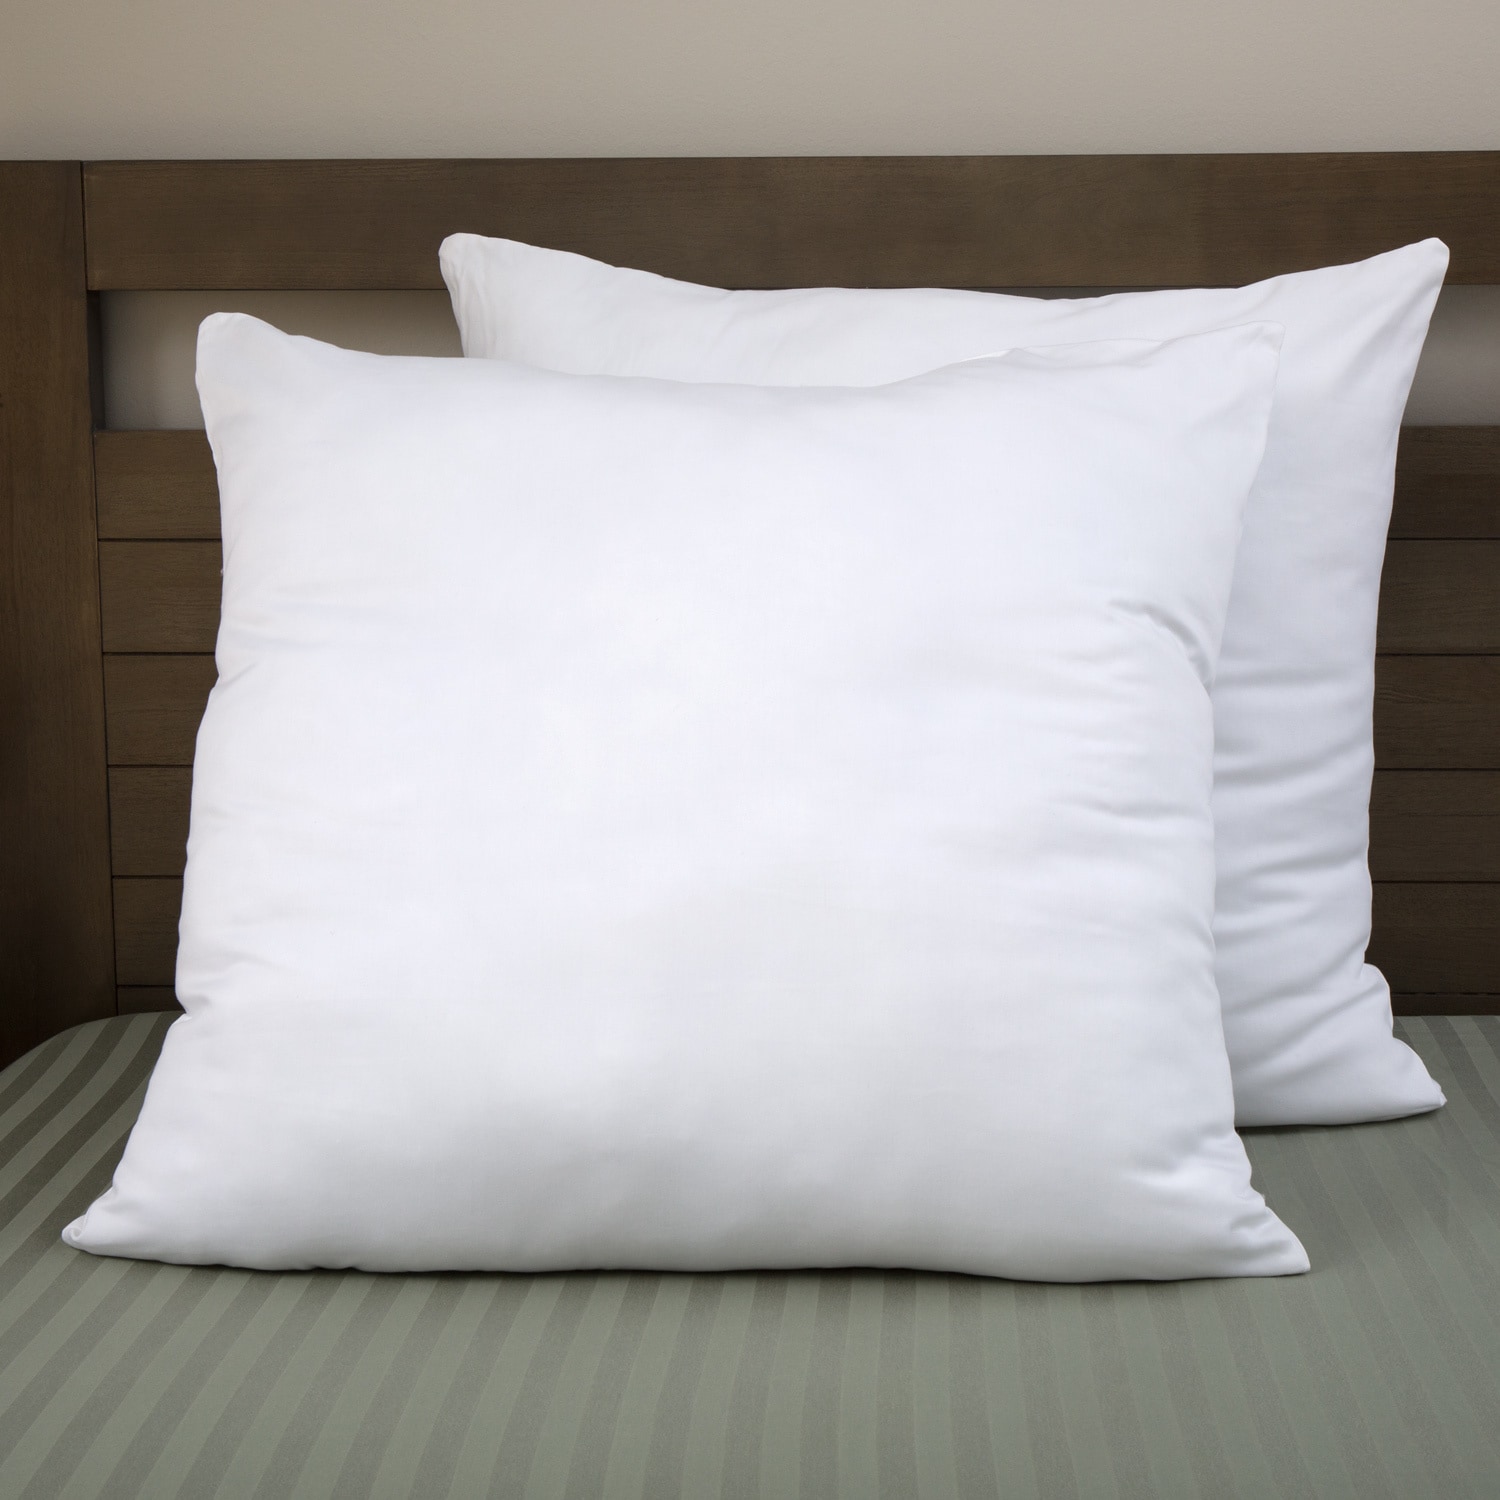 30x30 euro pillow